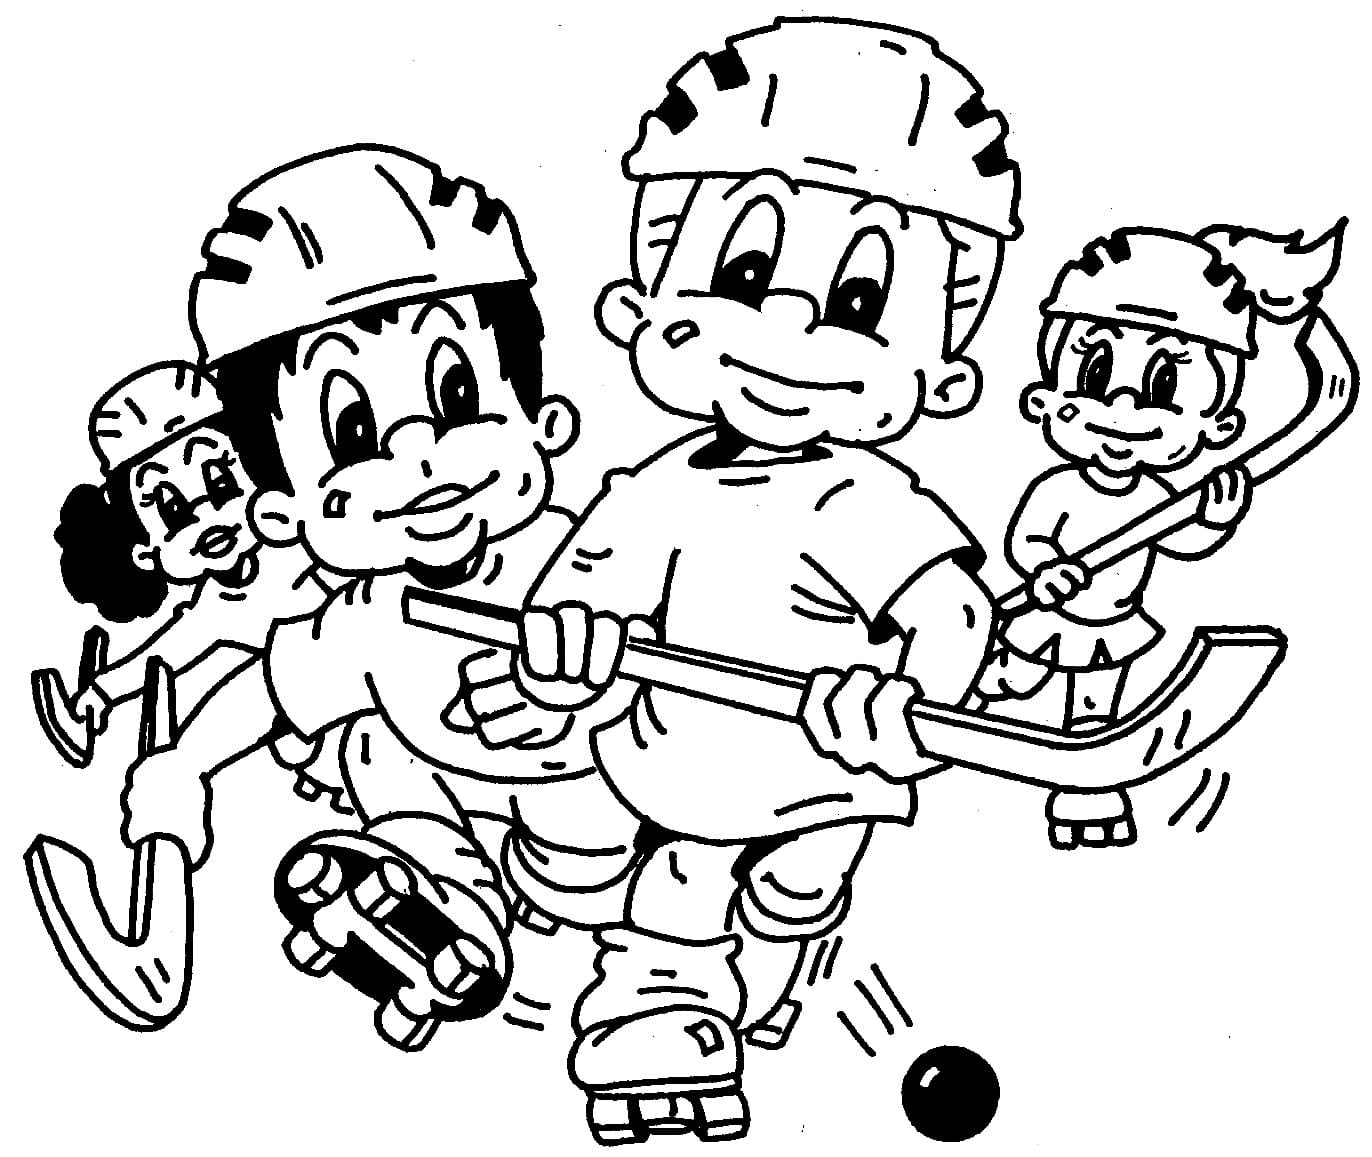 Enfants Jouent au Hockey coloring page